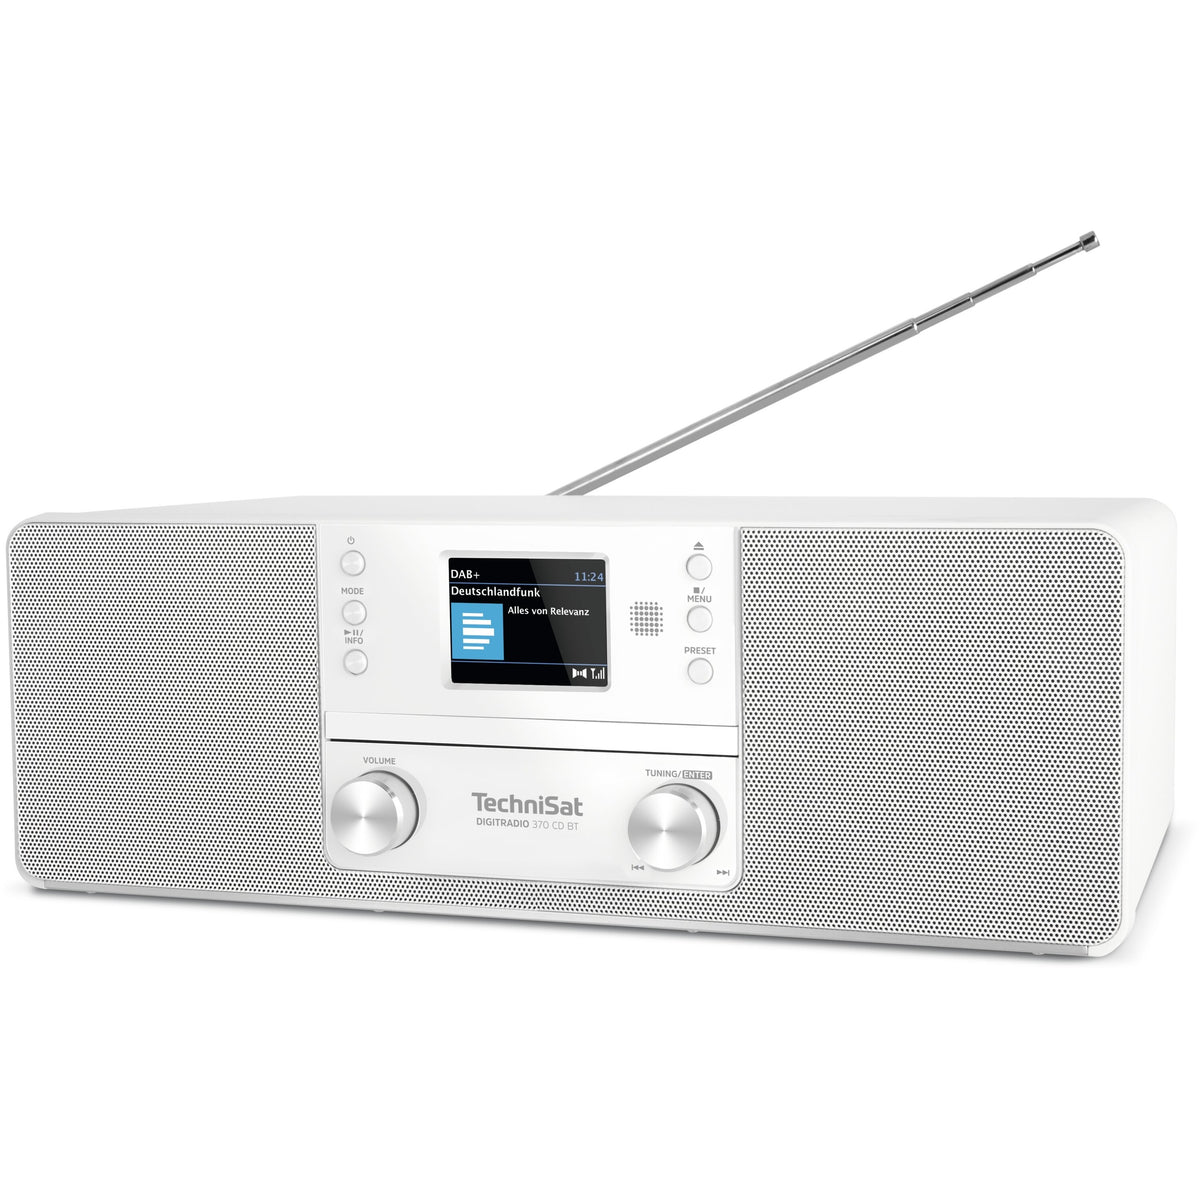 DAB rádio TechniSat DIGITRADIO 370 CD BT, bílé ROZBALENO